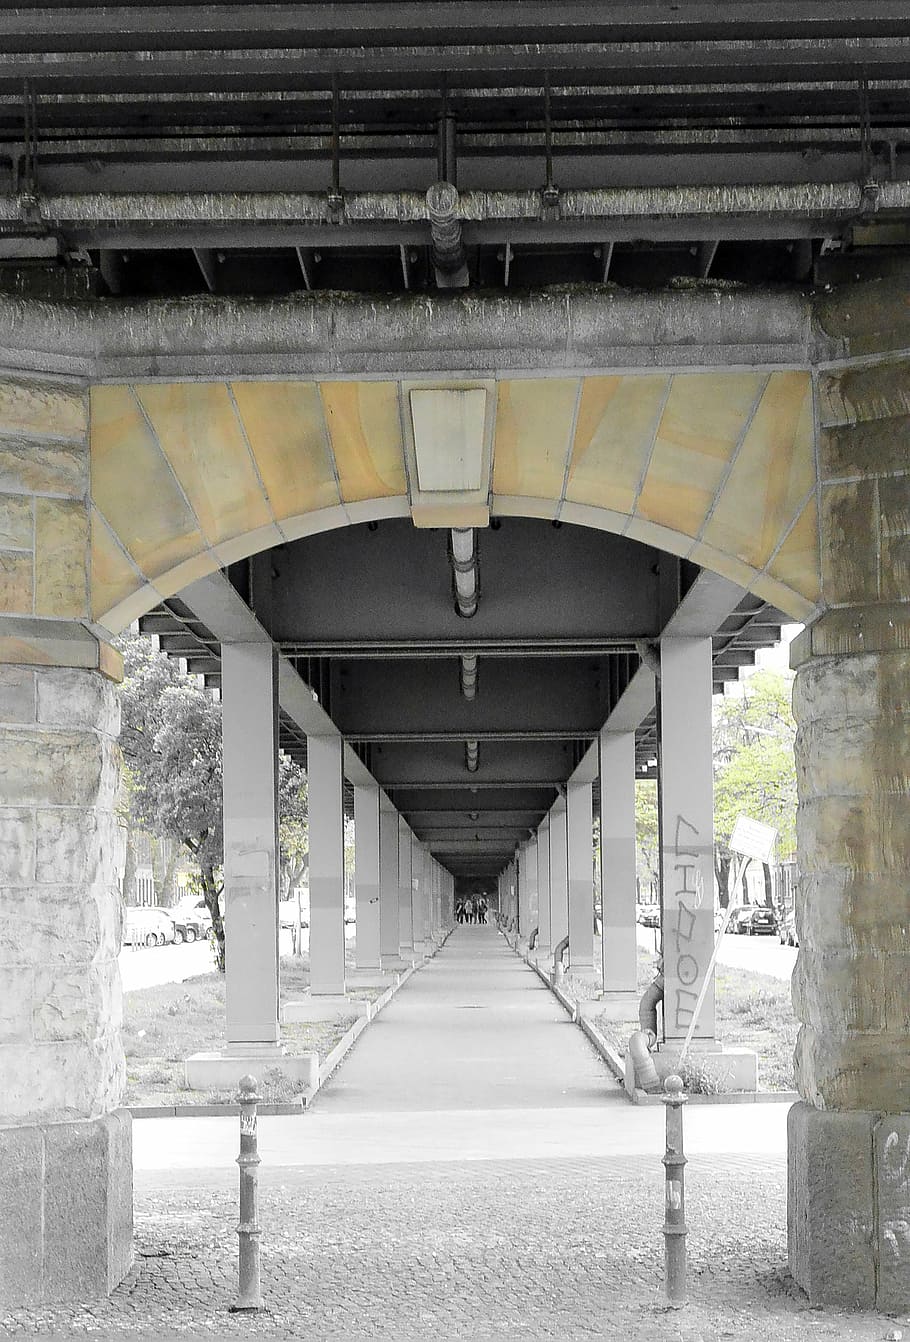 berlin, kreuzberg, bagian, ubahn, tujuan, arsitektur, koneksi, struktur yang dibangun, jembatan, jembatan - struktur buatan manusia